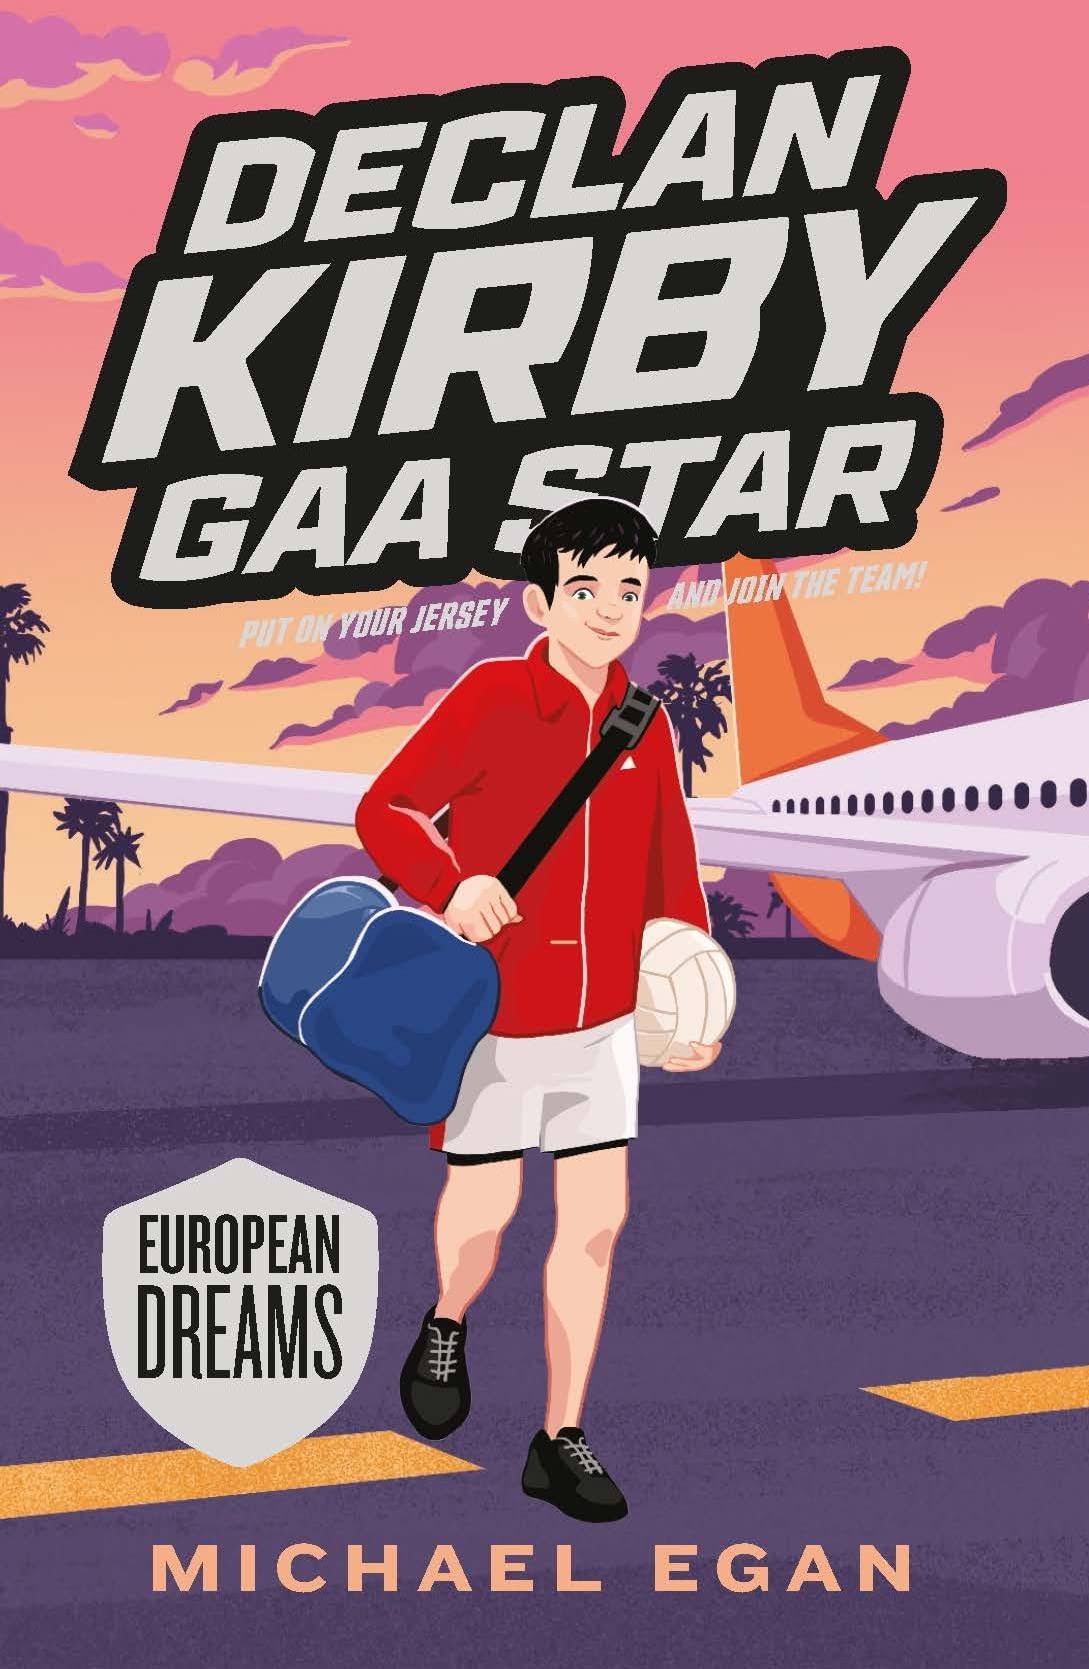 Declan Kirby - GAA Star : European Dreams